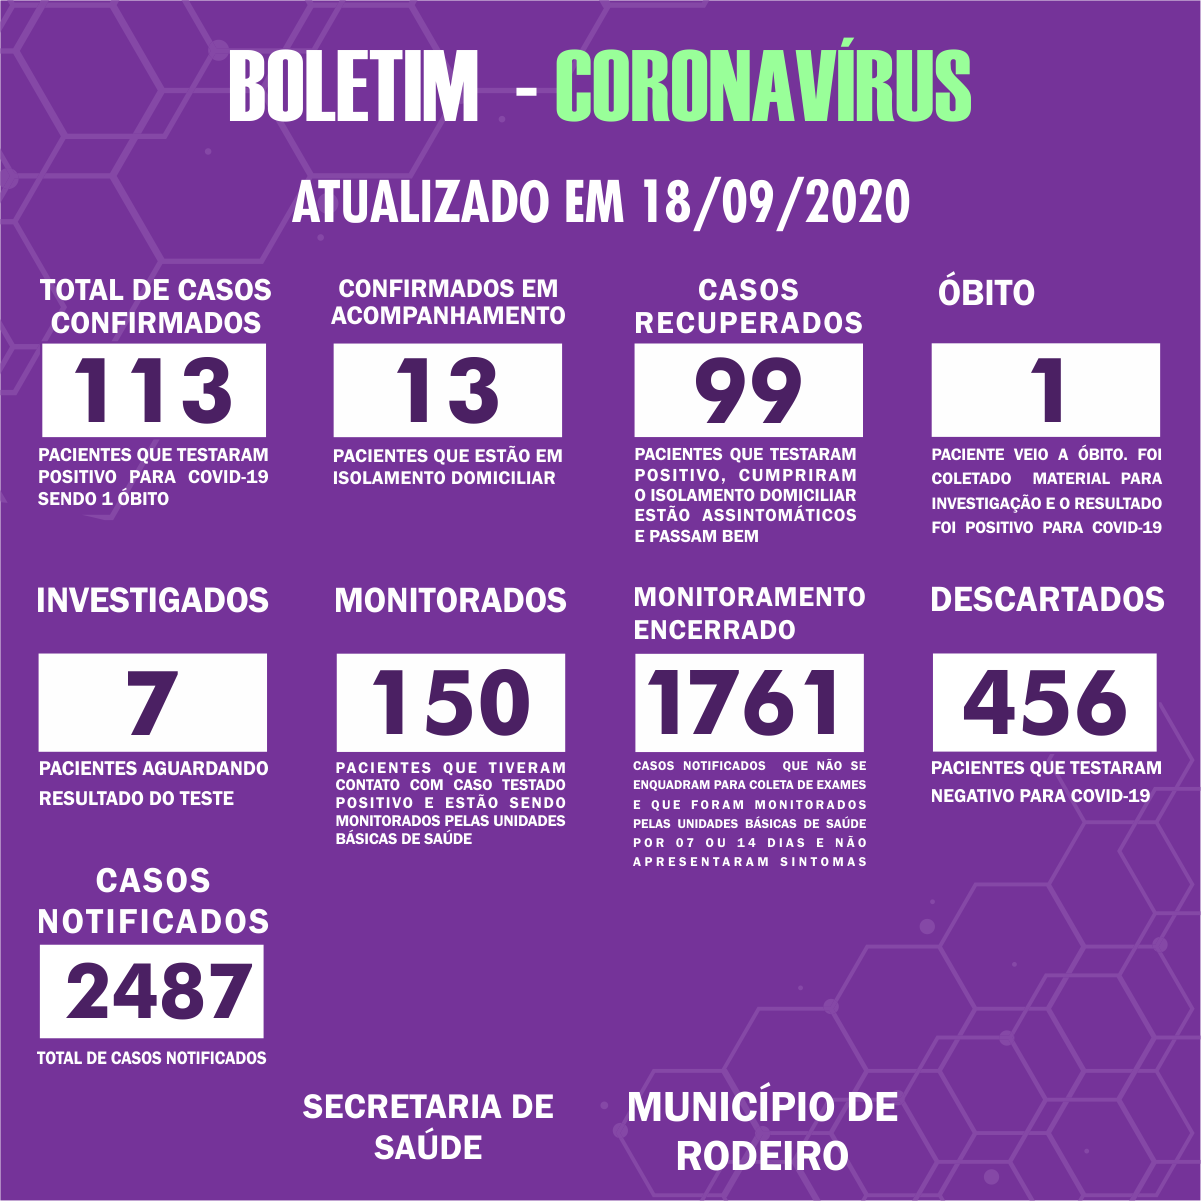 Boletim Epidemiológico do Município de Rodeiro sobre coronavírus, atualizado em 18/09/2020